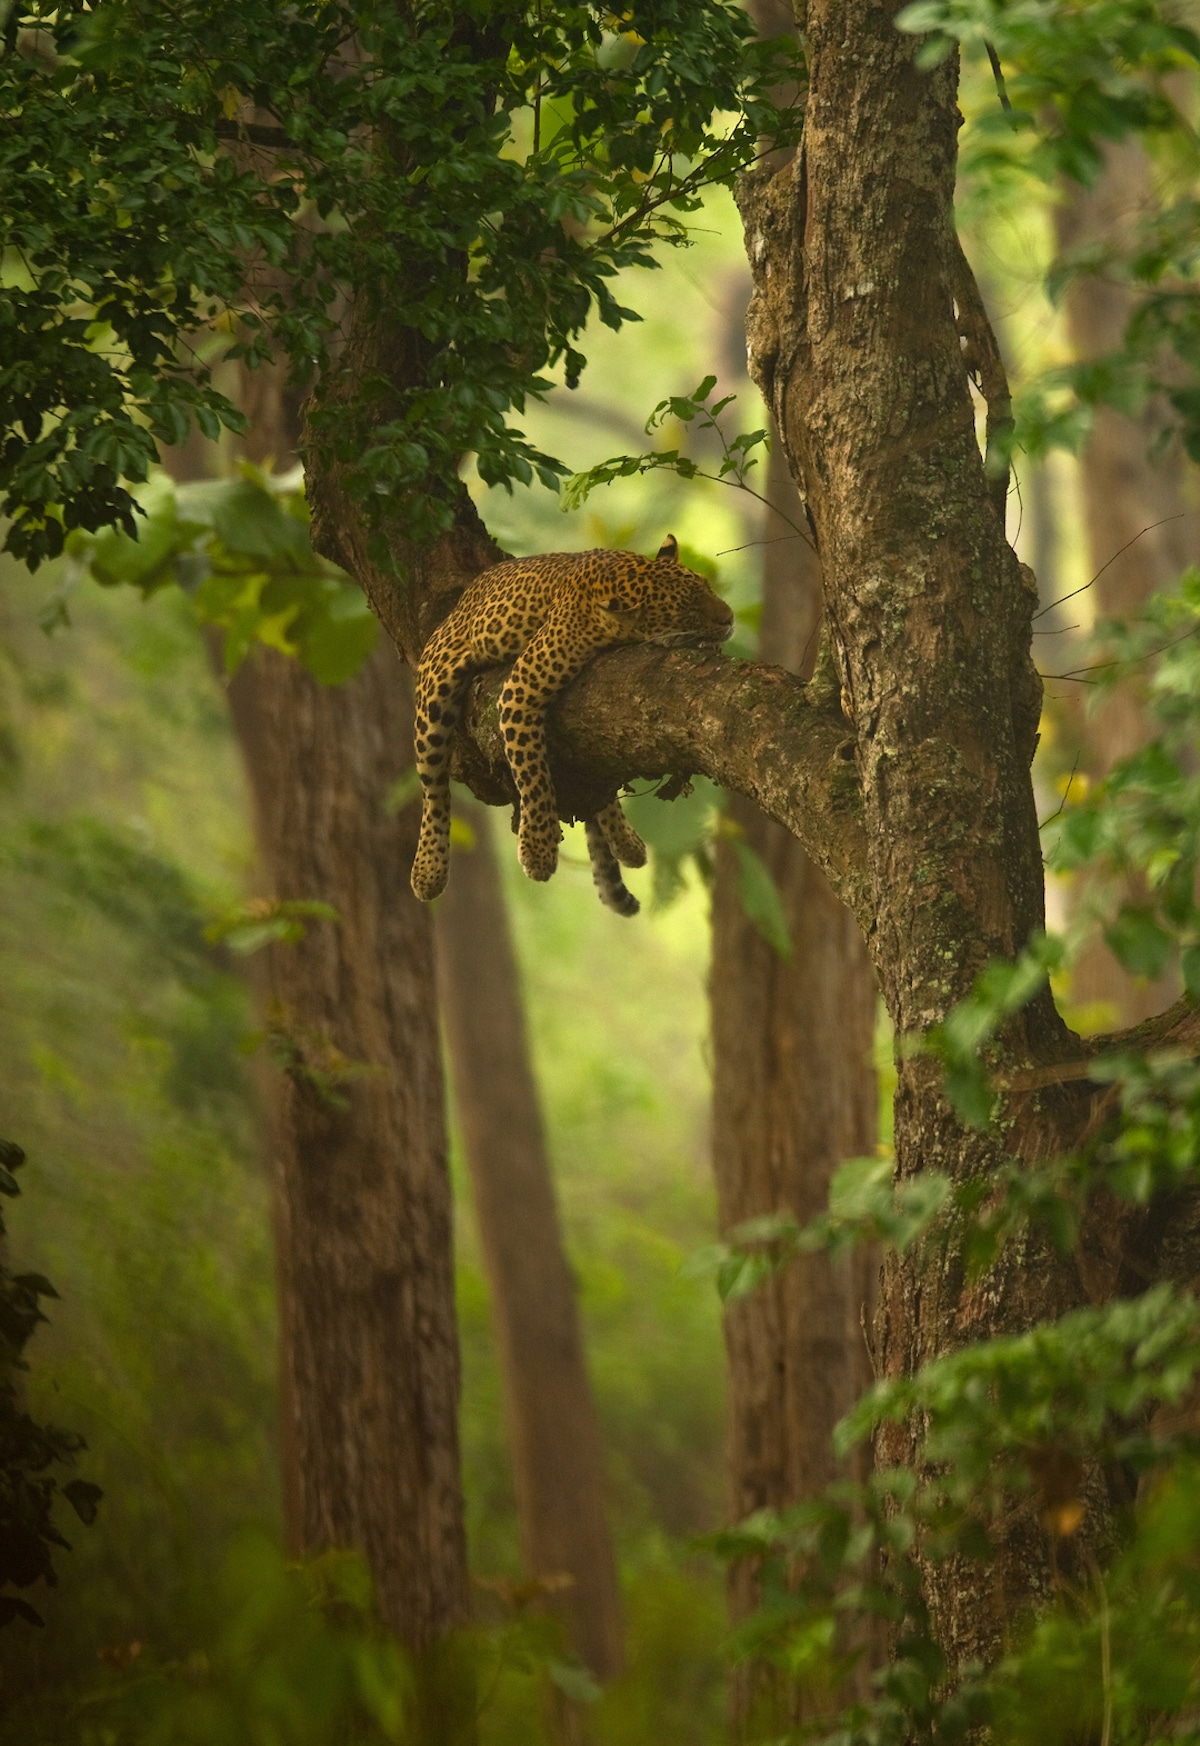 Leopardo dormido